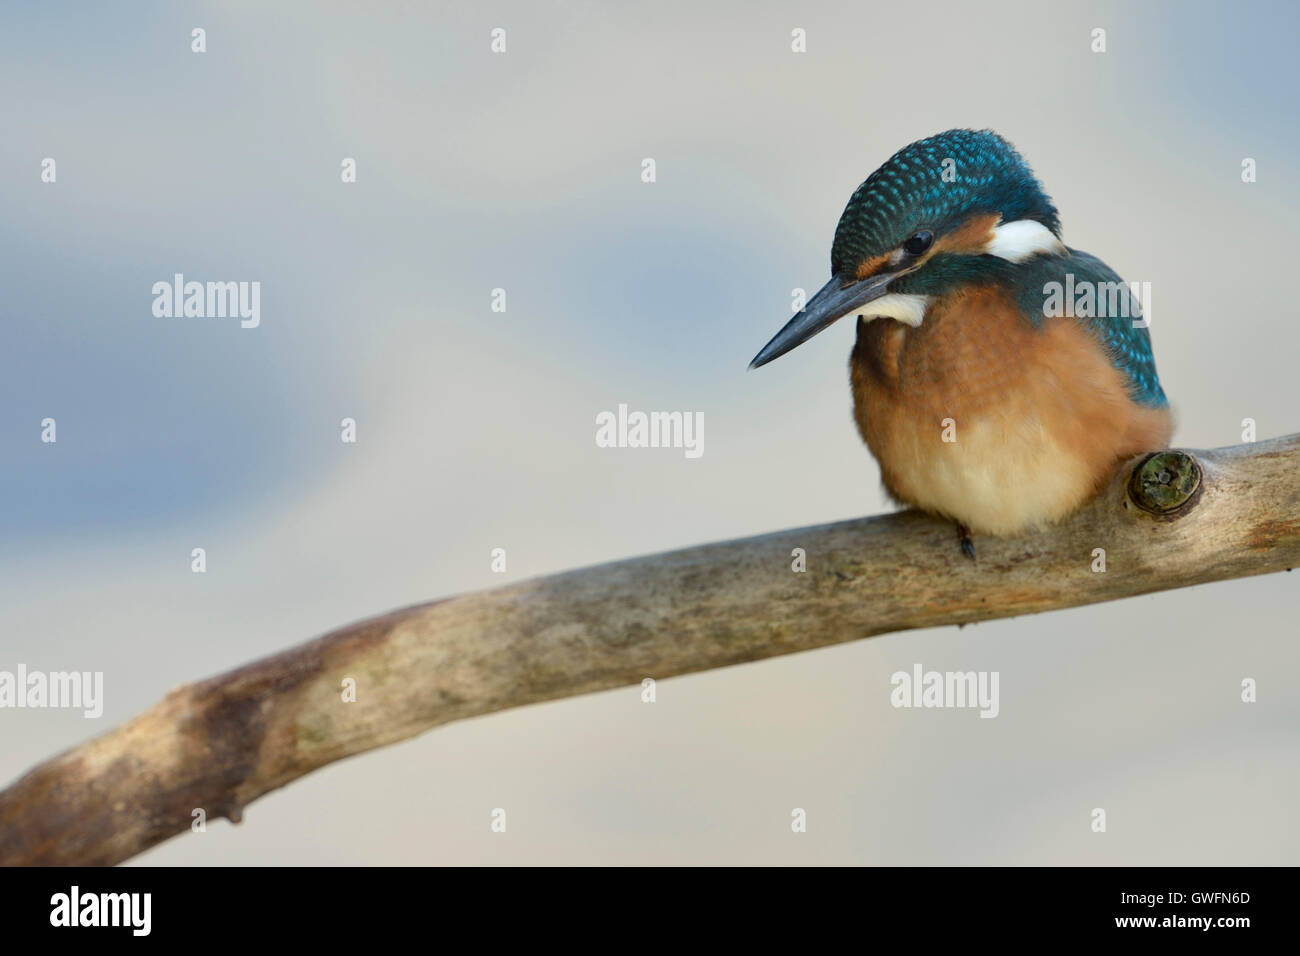 Kingfisher commun / Optimize ( Alcedo atthis ), jeune oiseau, perché sur une branche, vue frontale, nice. Banque D'Images